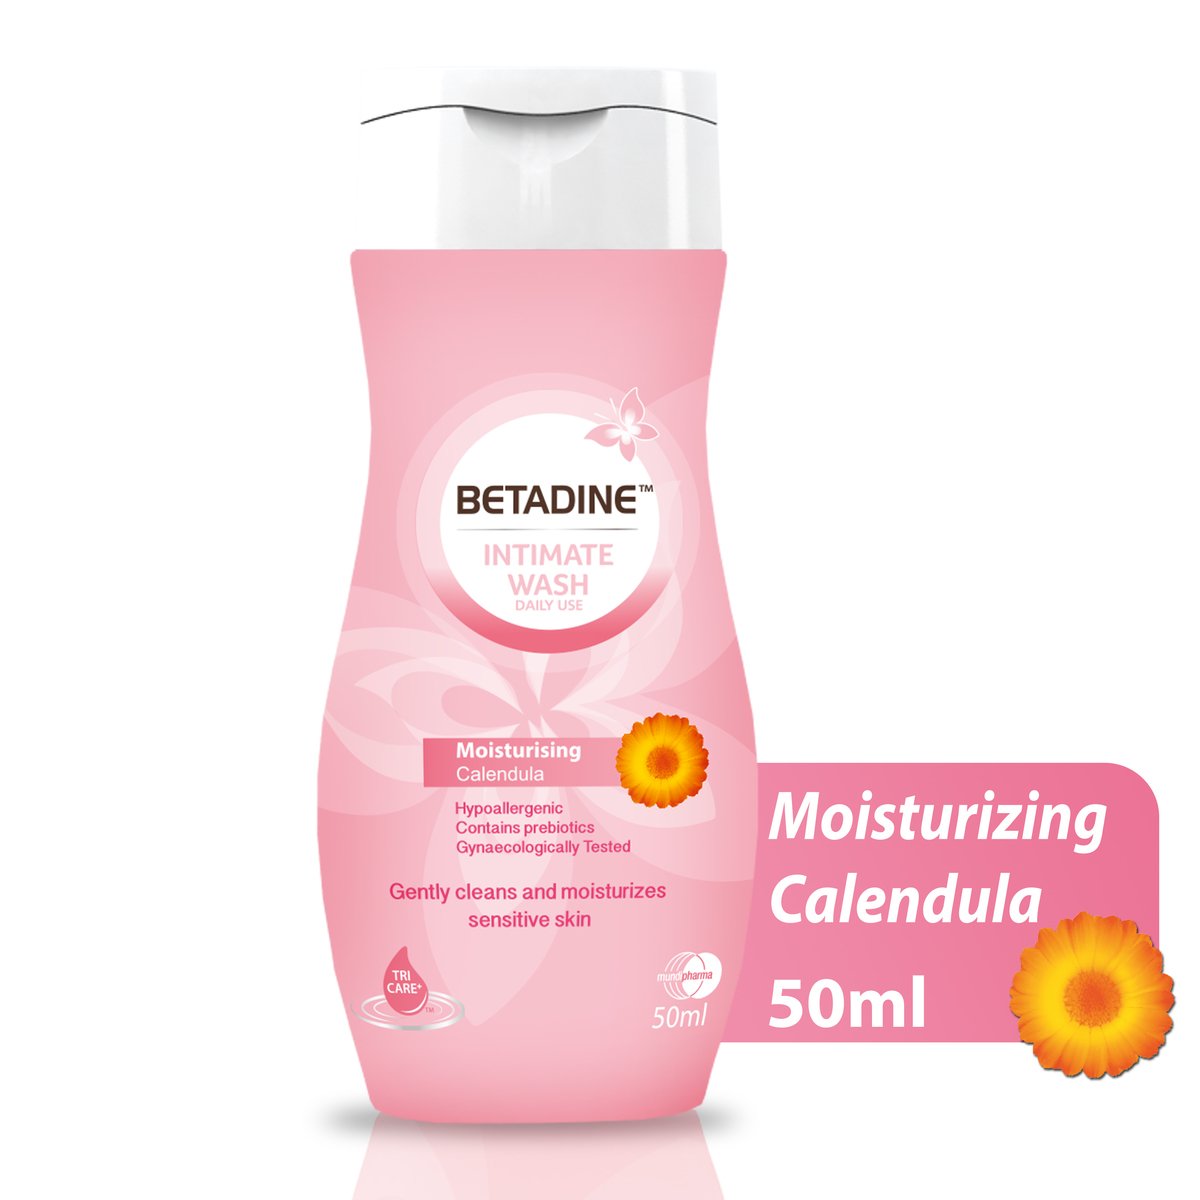 Betadine Intimate Wash Moisturizing Calendula 50ml